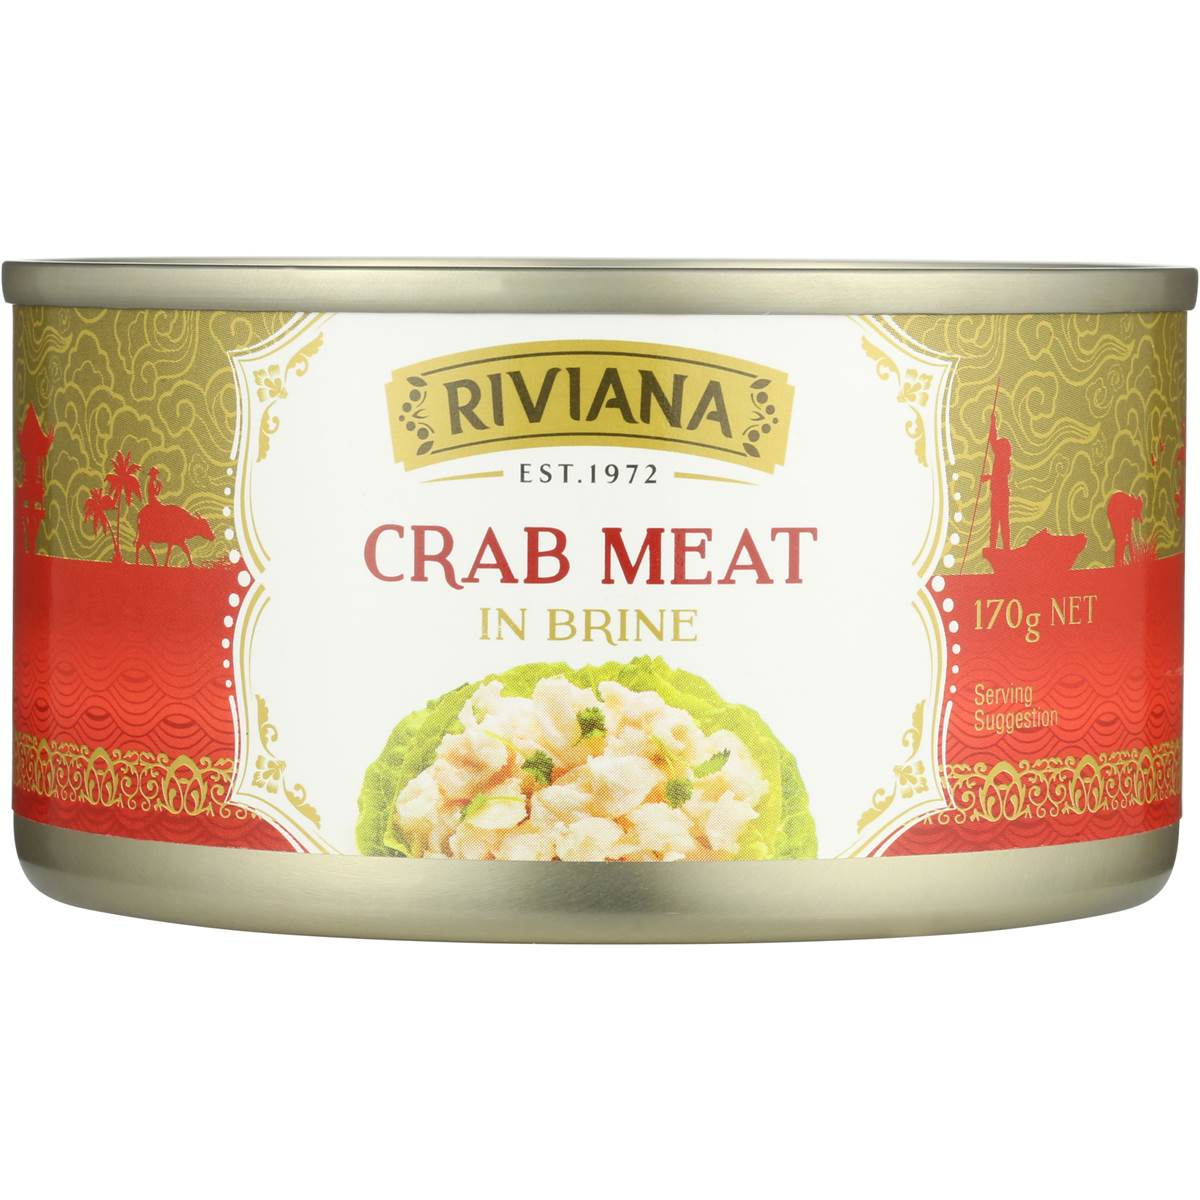 Riviana Crab Meat 170g